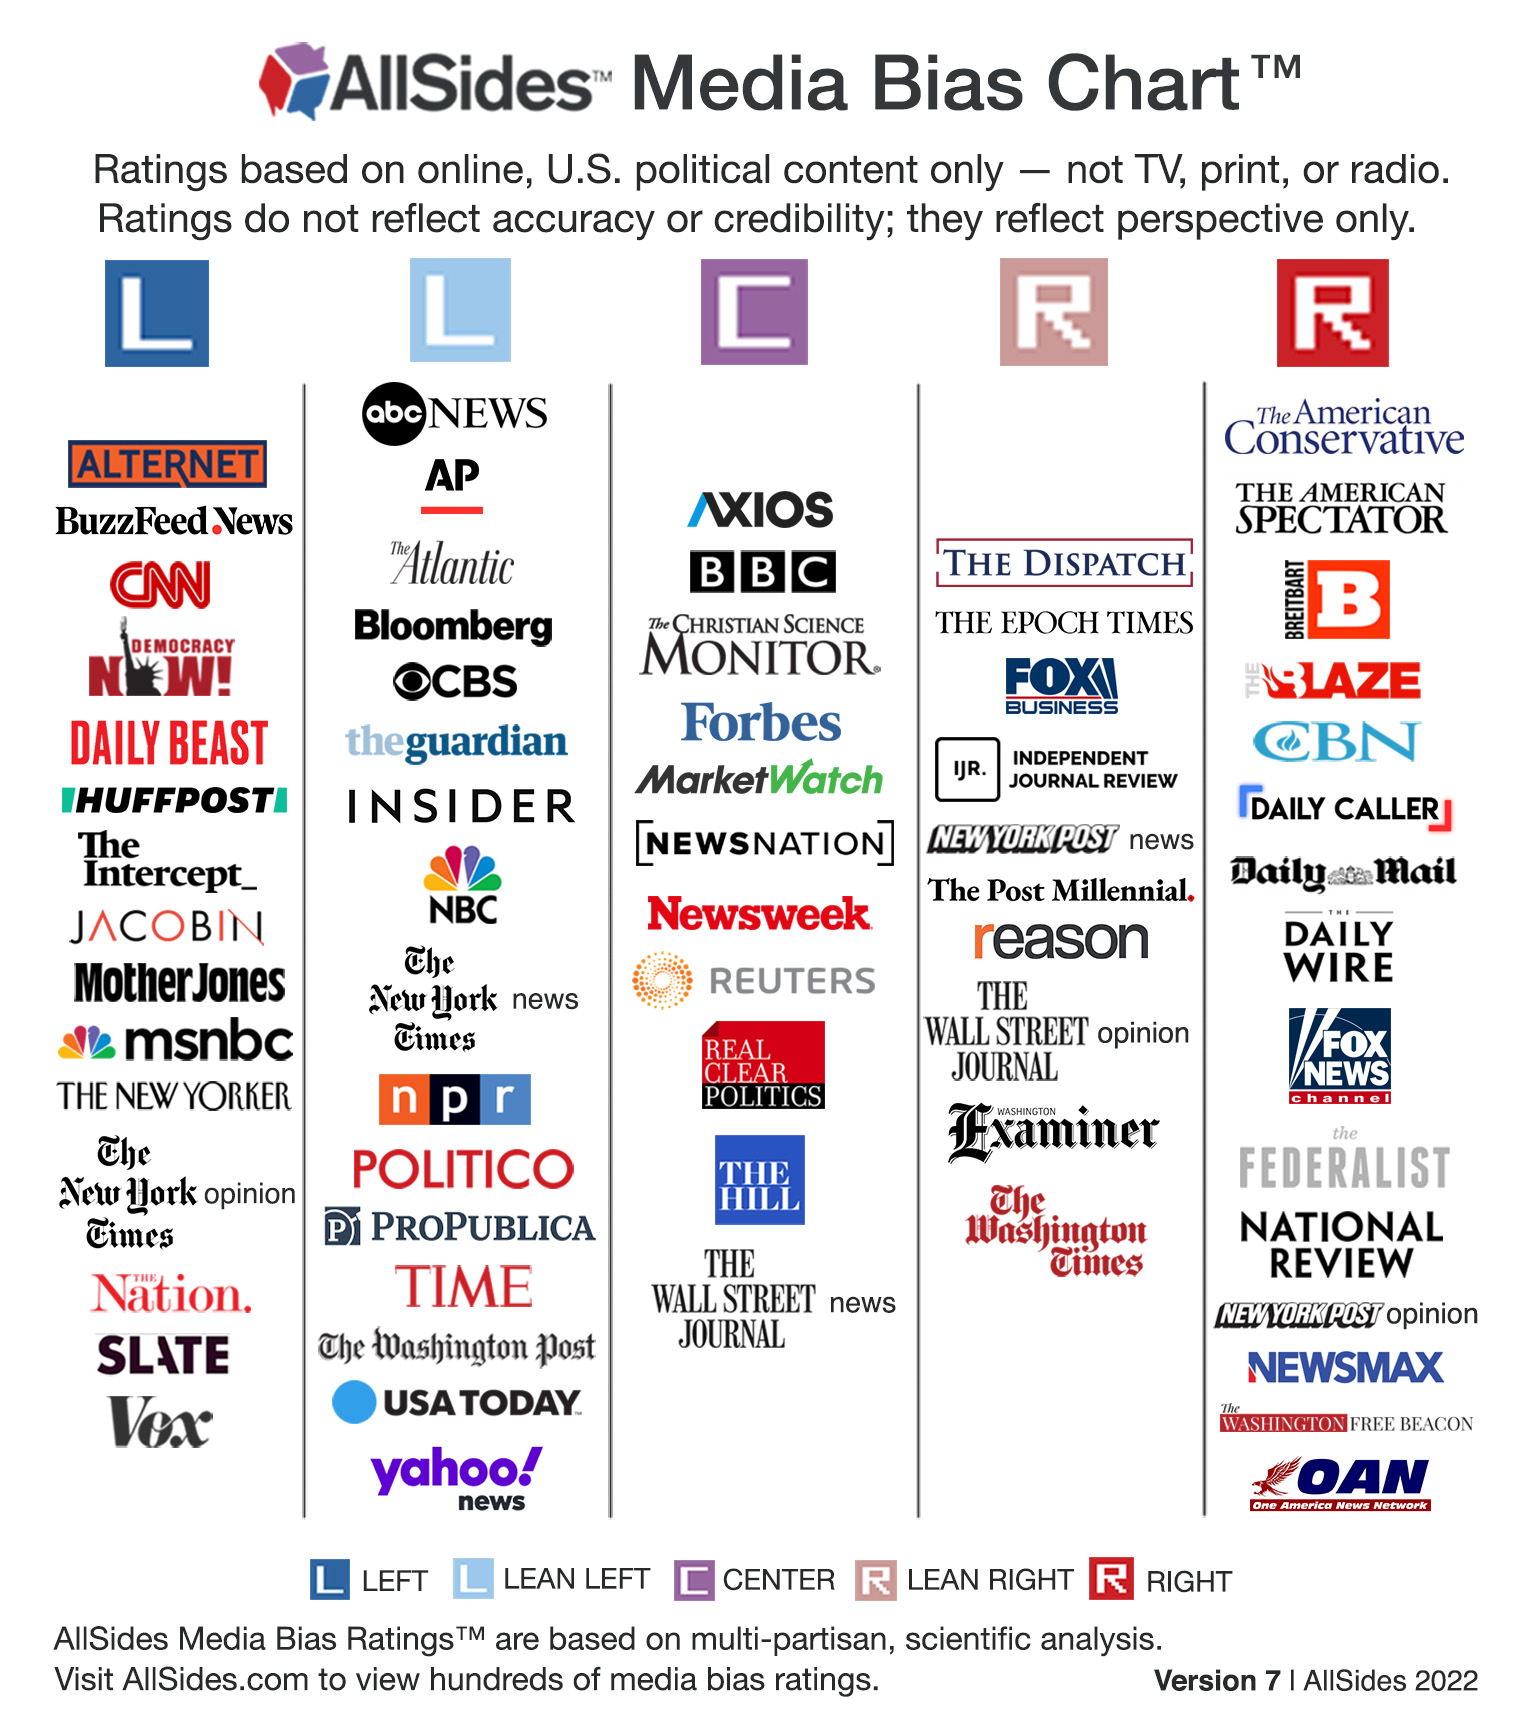 AllSides Media Bias Chart Version 7, 2022